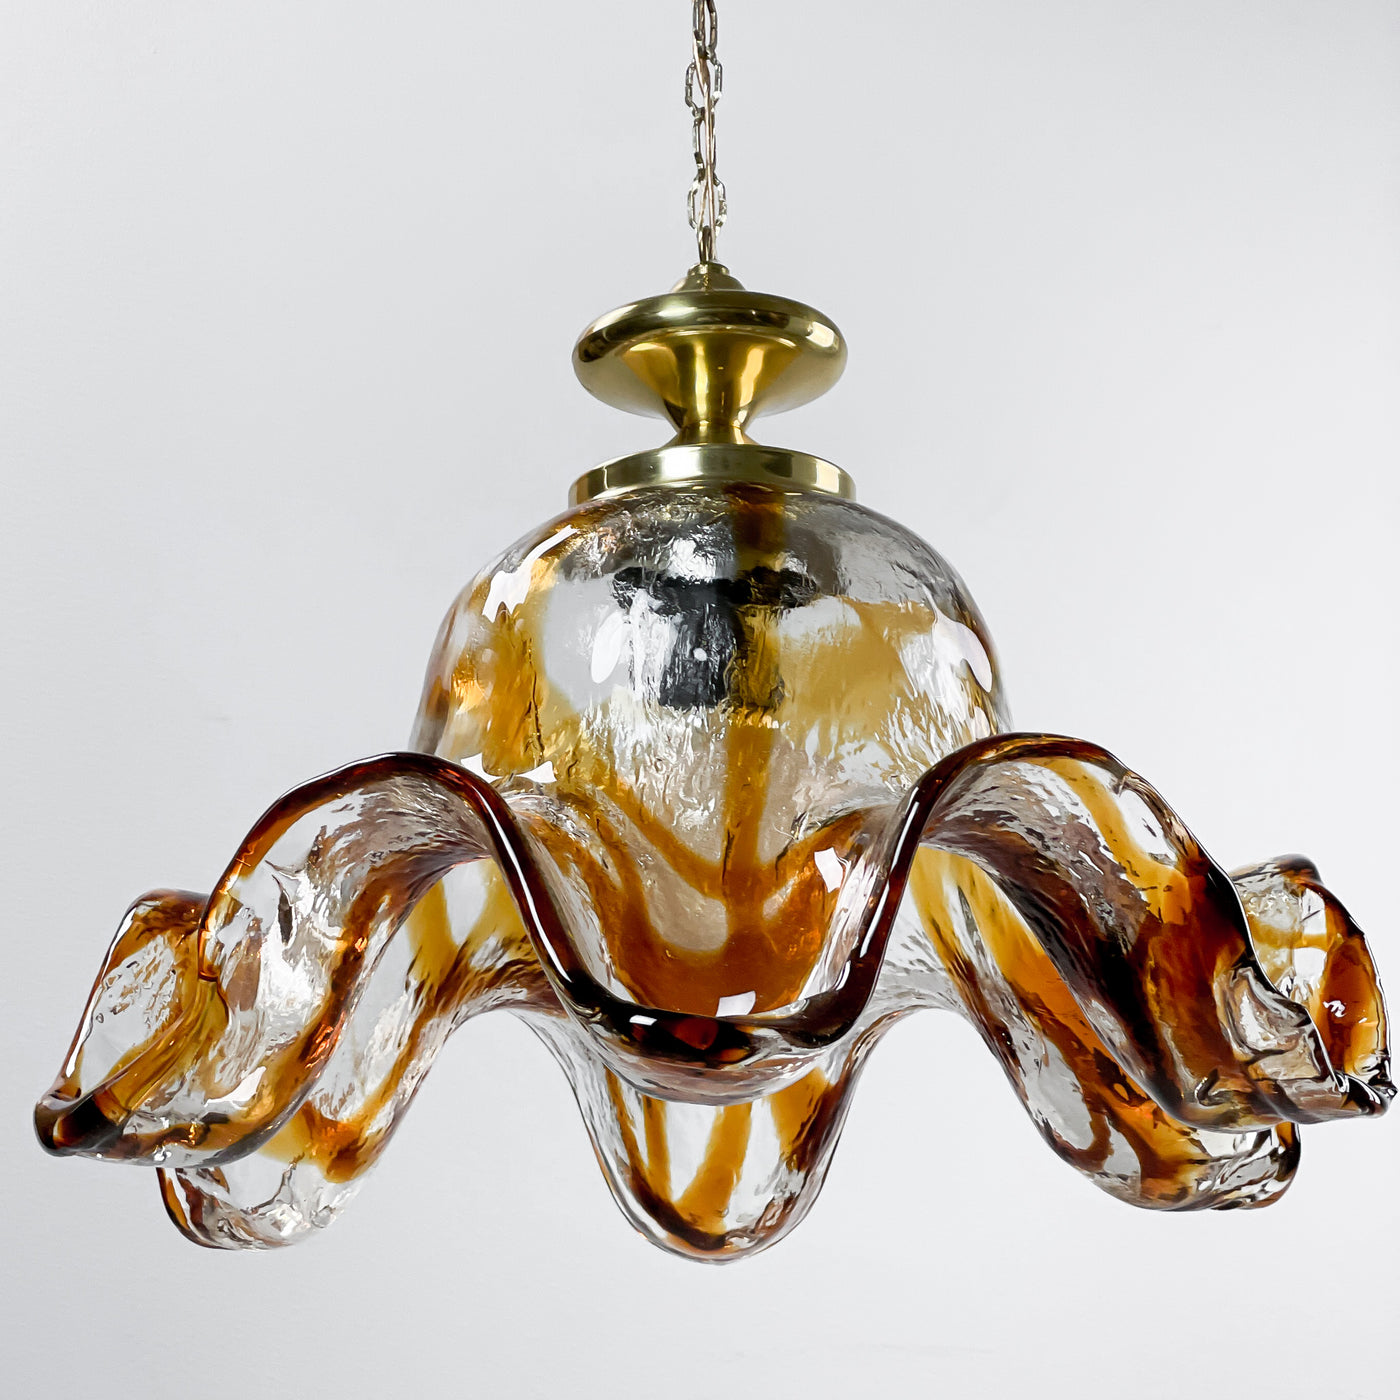 Lampa i glas - Fåglavik